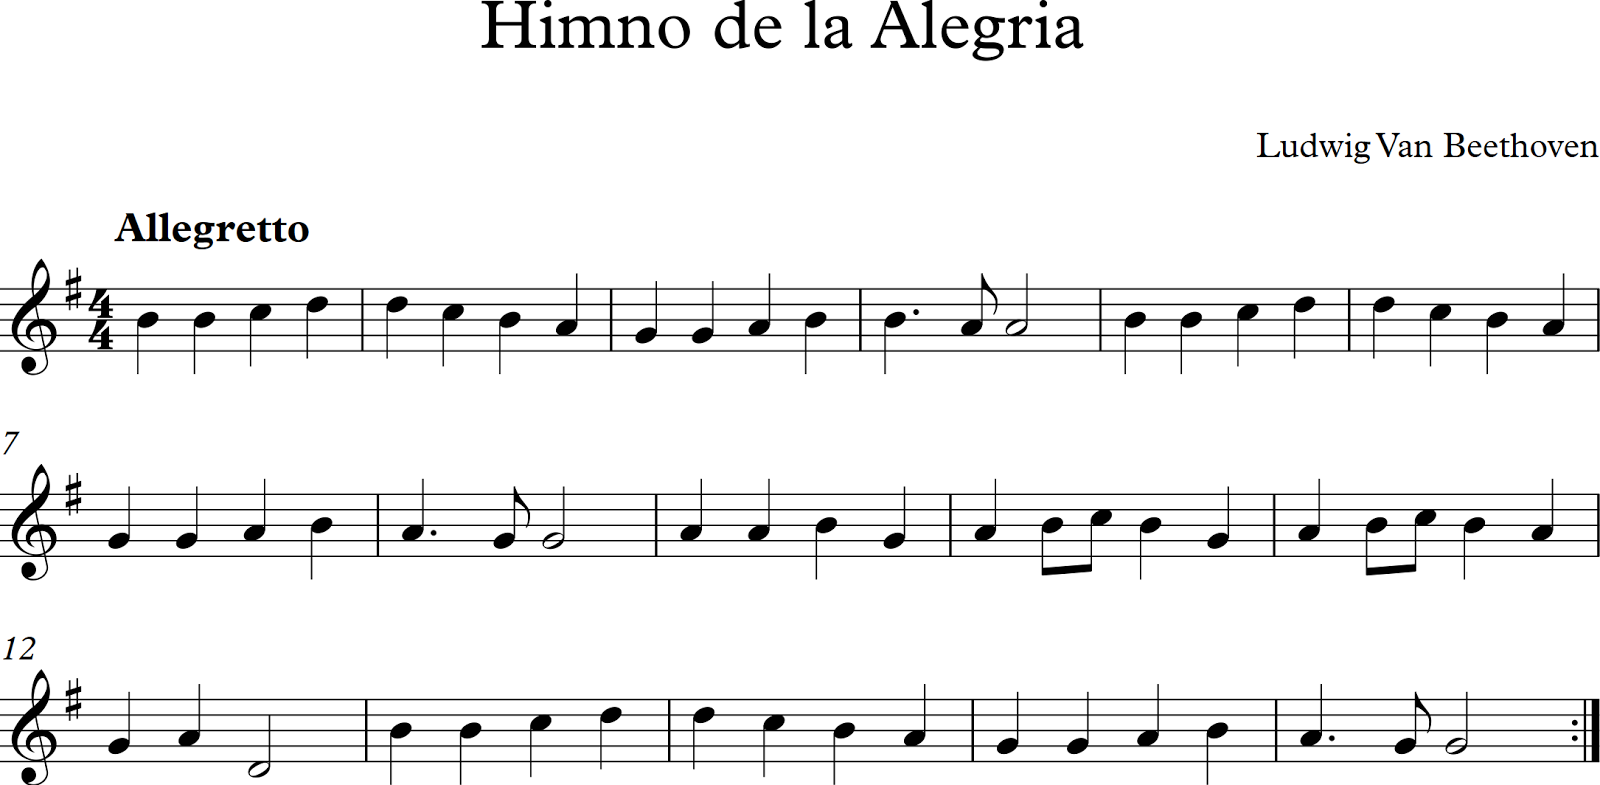 [Imagen: Himno+de+la+Alegria.png]